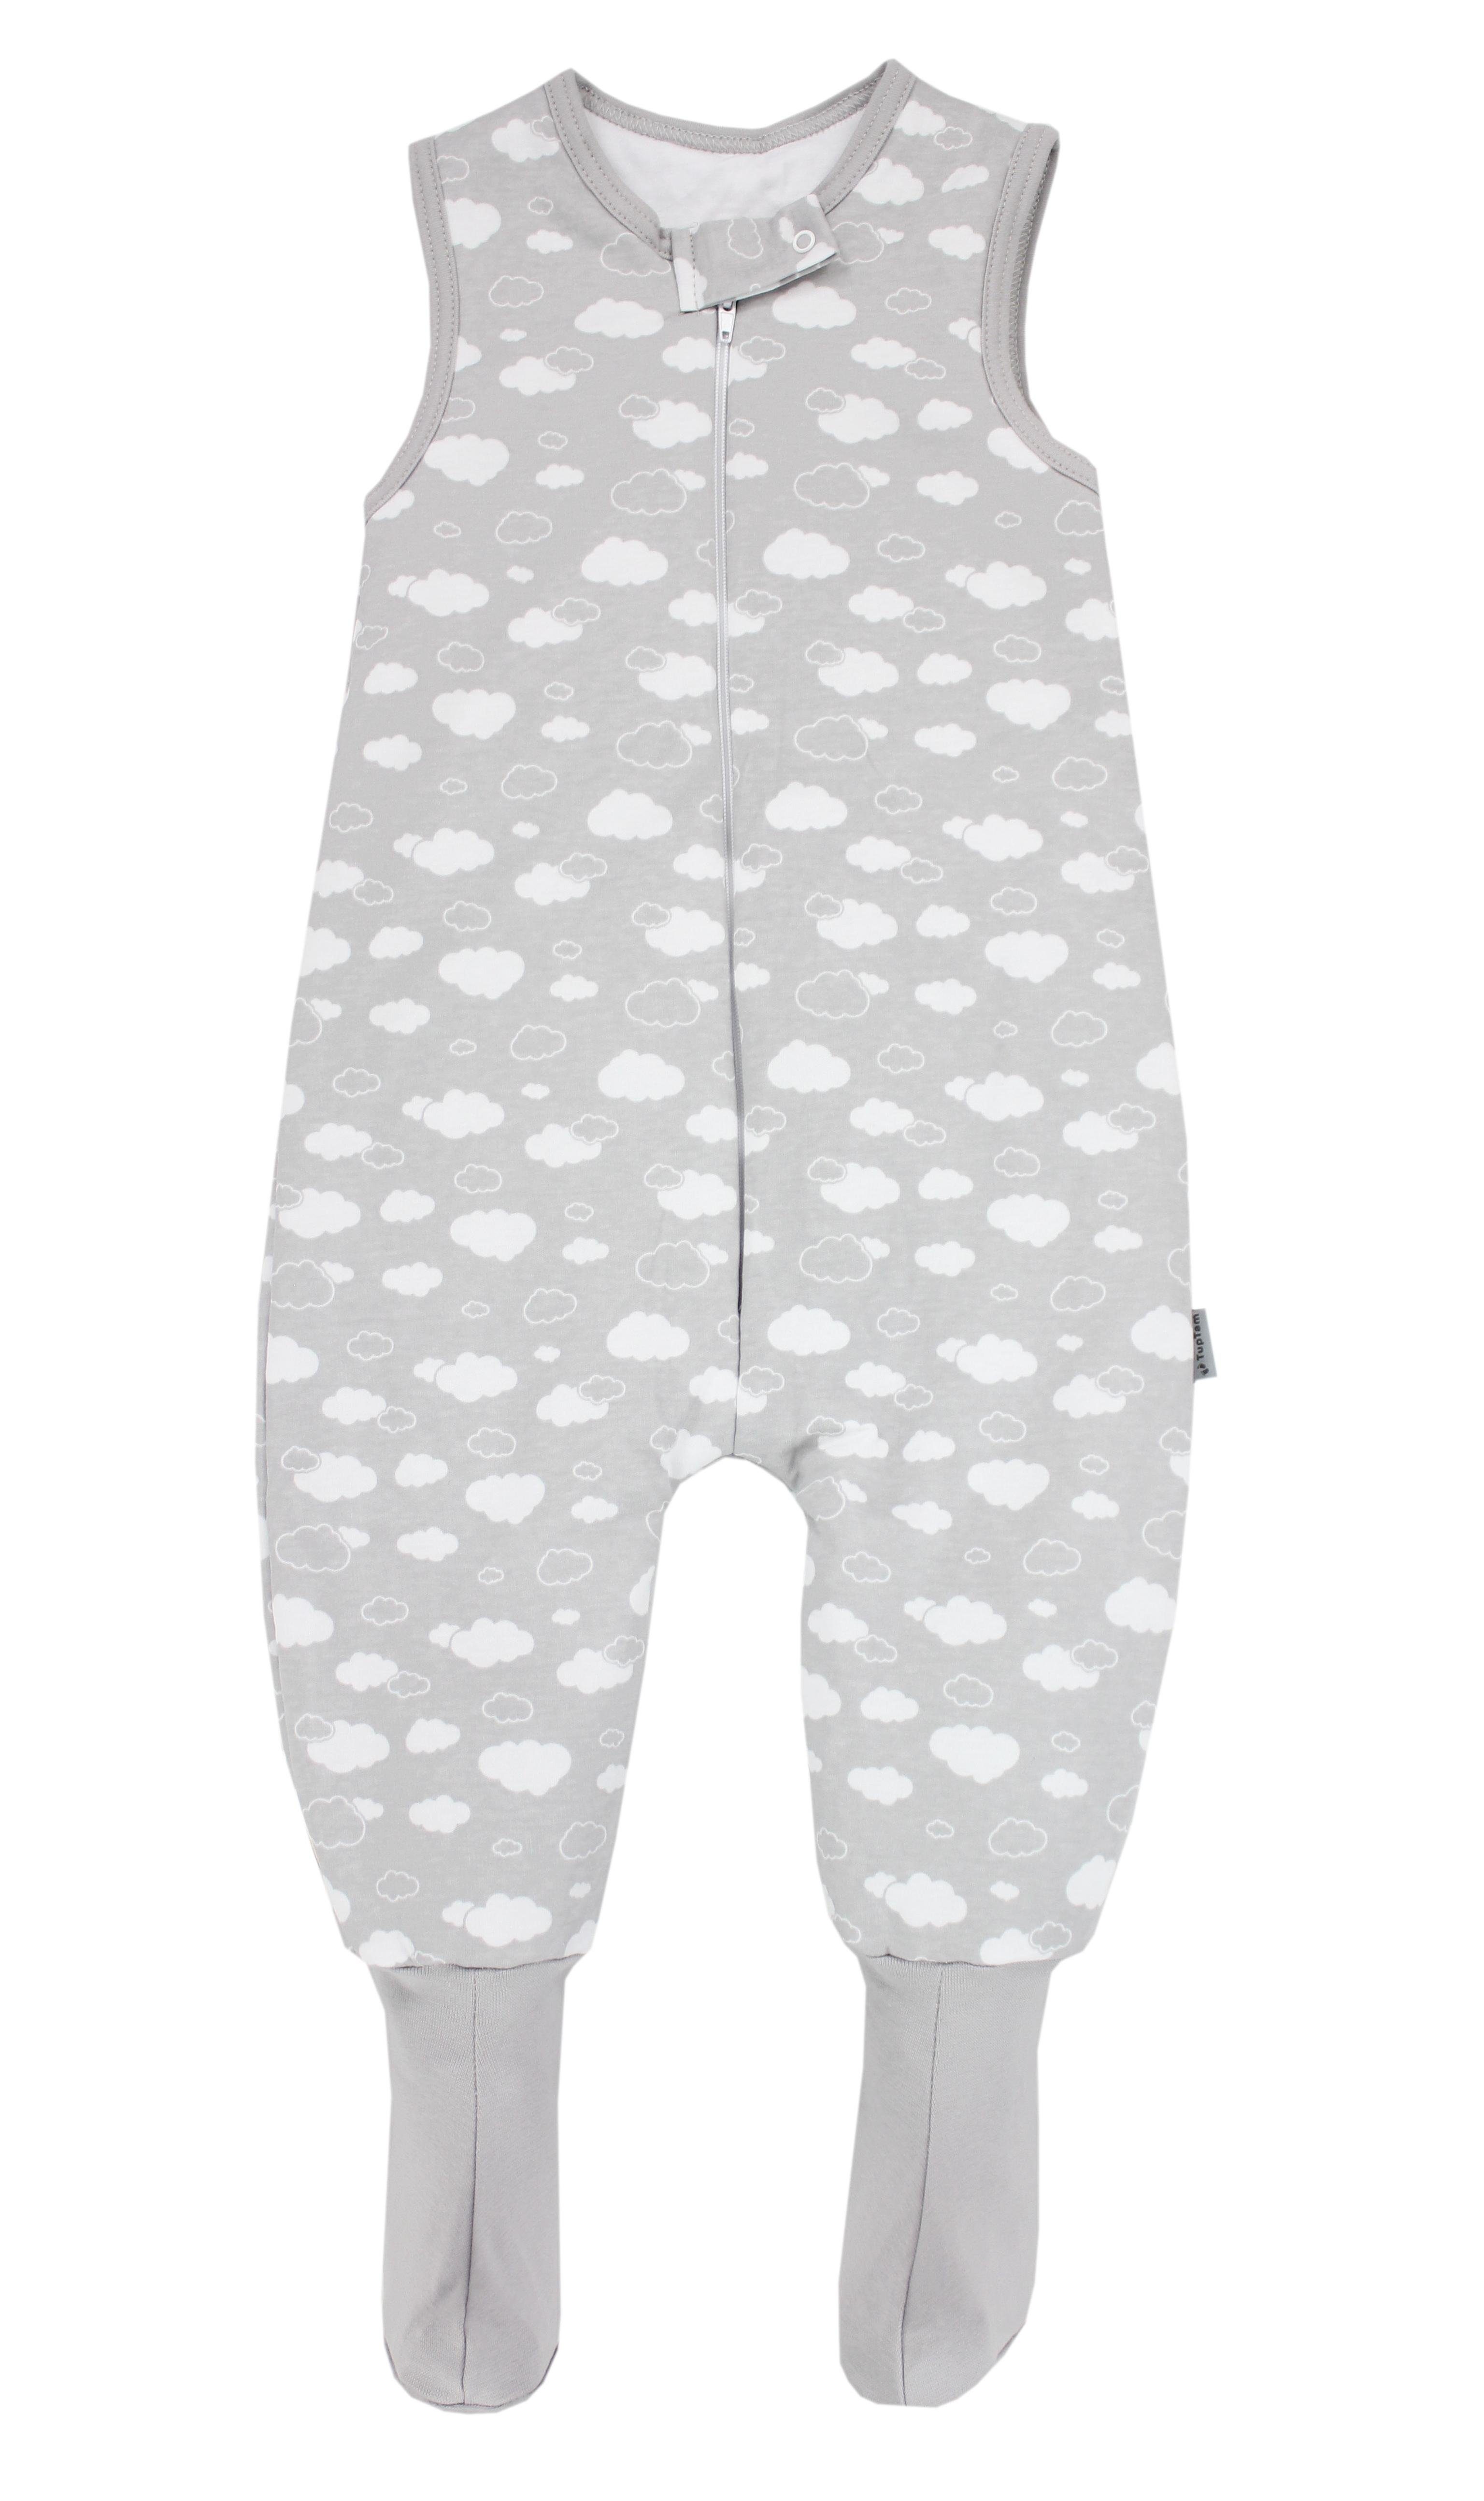 TupTam Babyschlafsack Winterschlafsack mit Beinen und Füßen OEKO-TEX zertifiziert, 2.5 TOG Wolken Grau